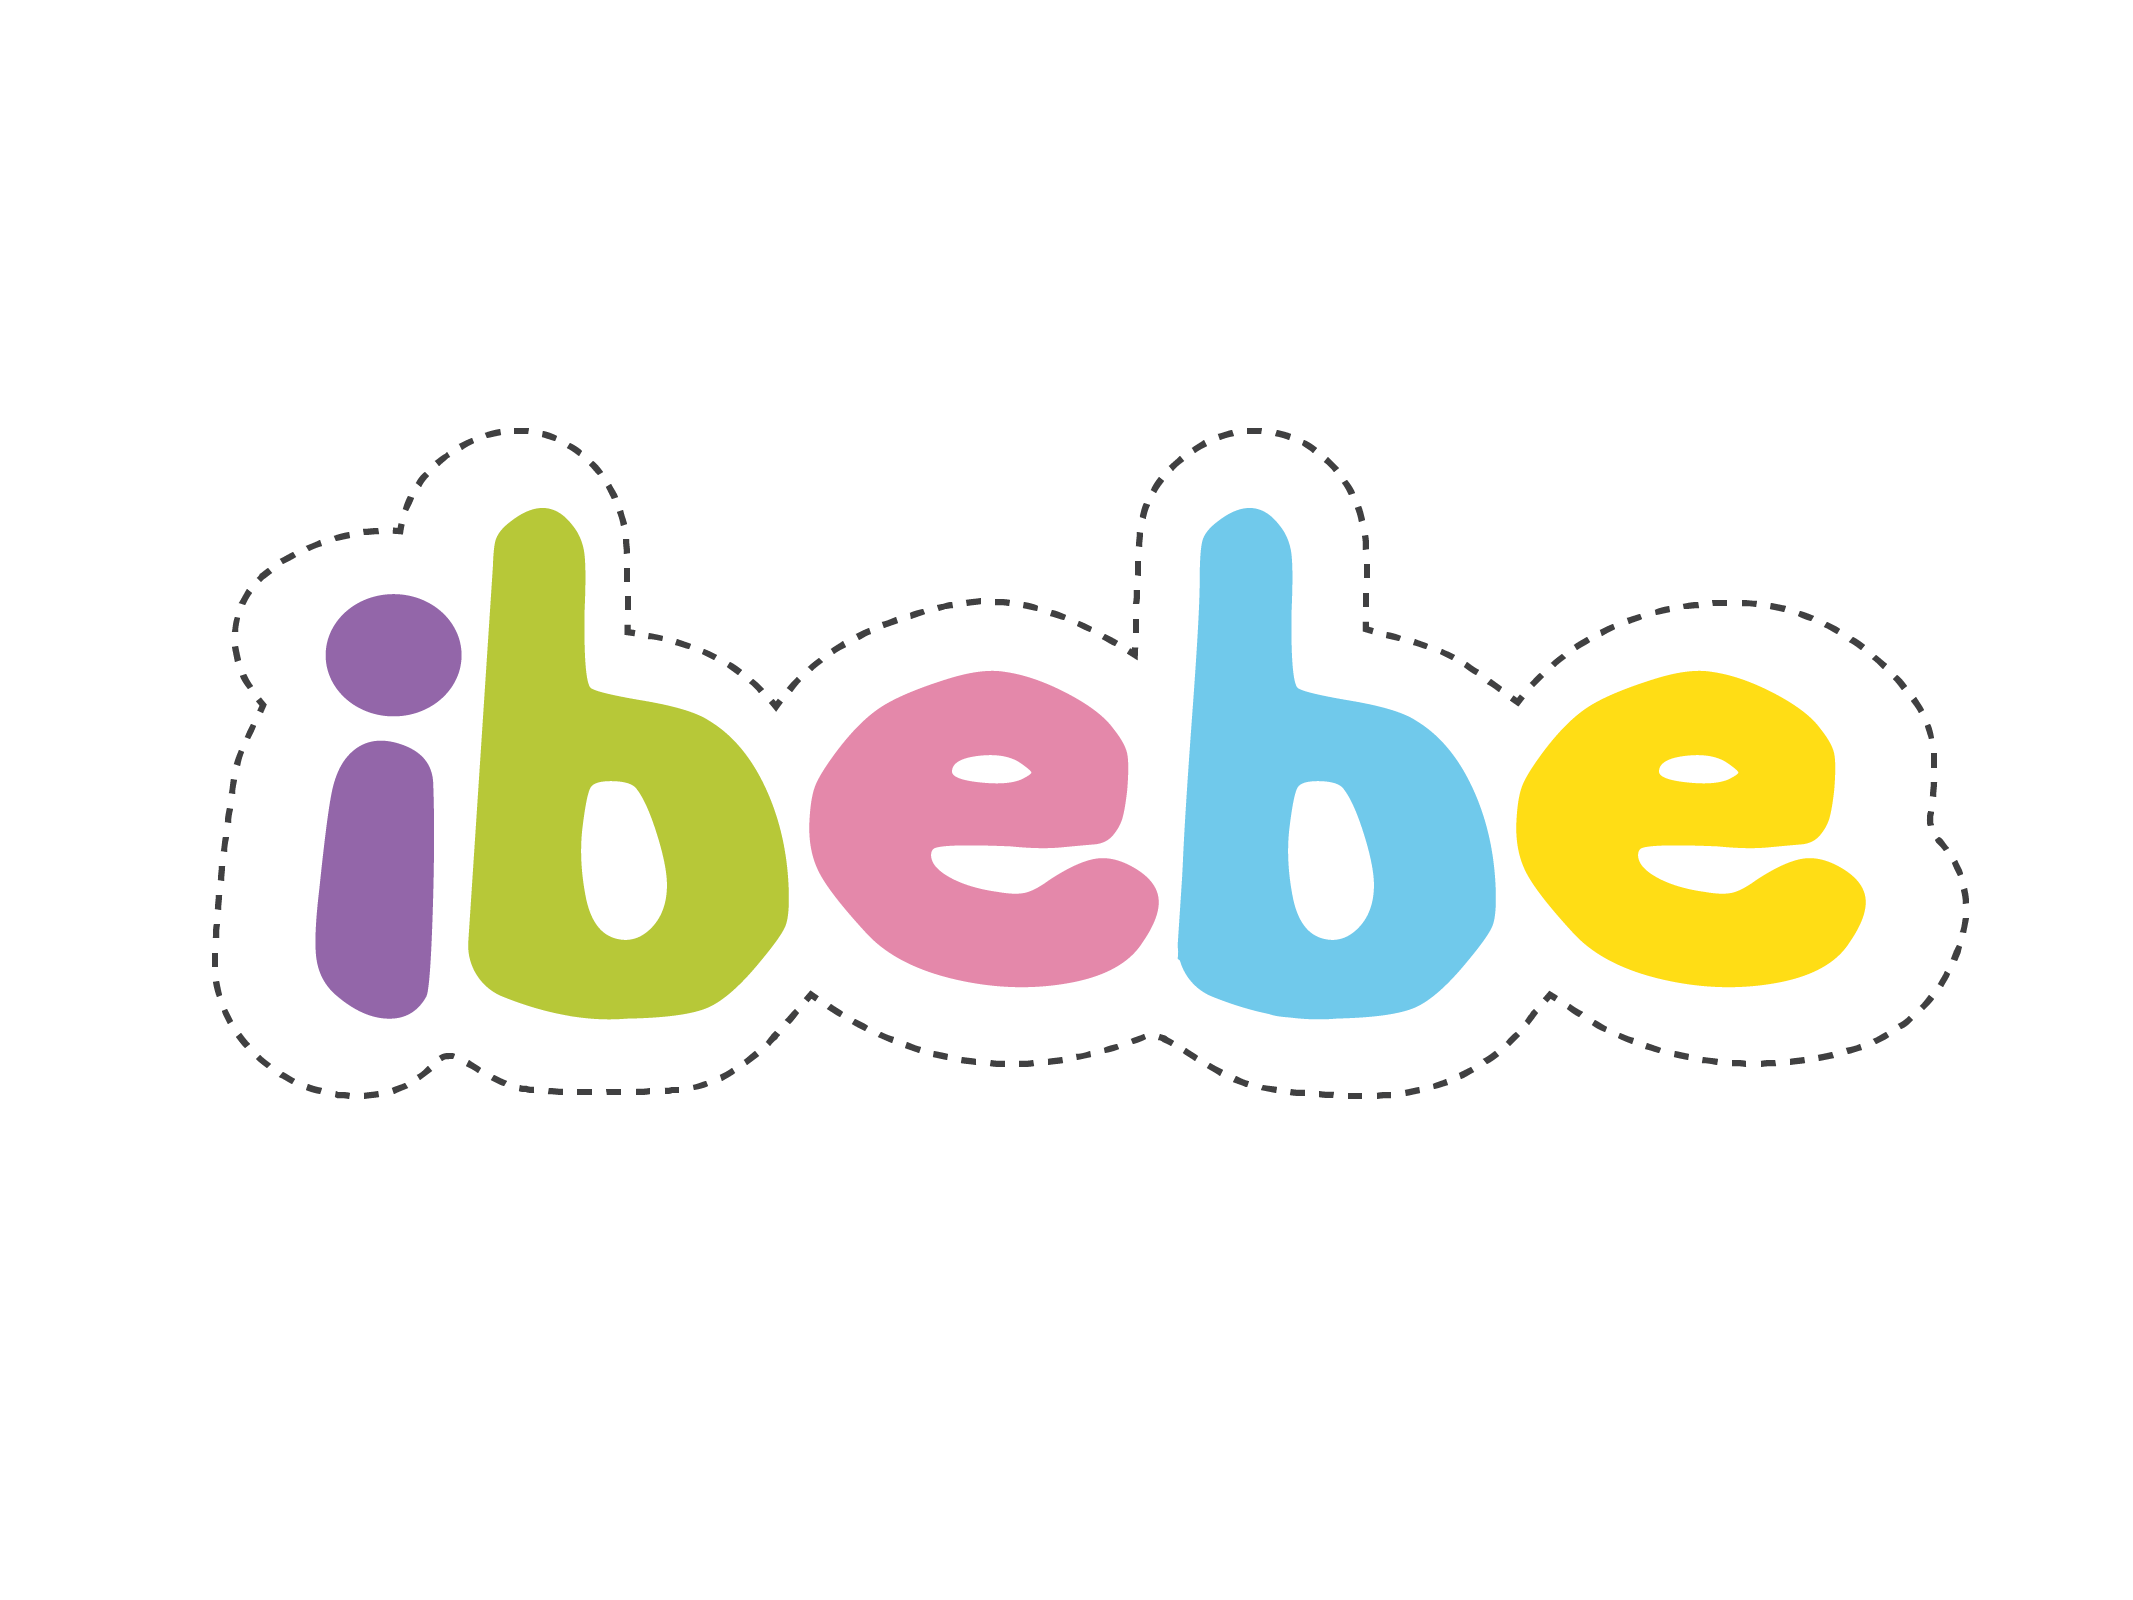 IBEBE